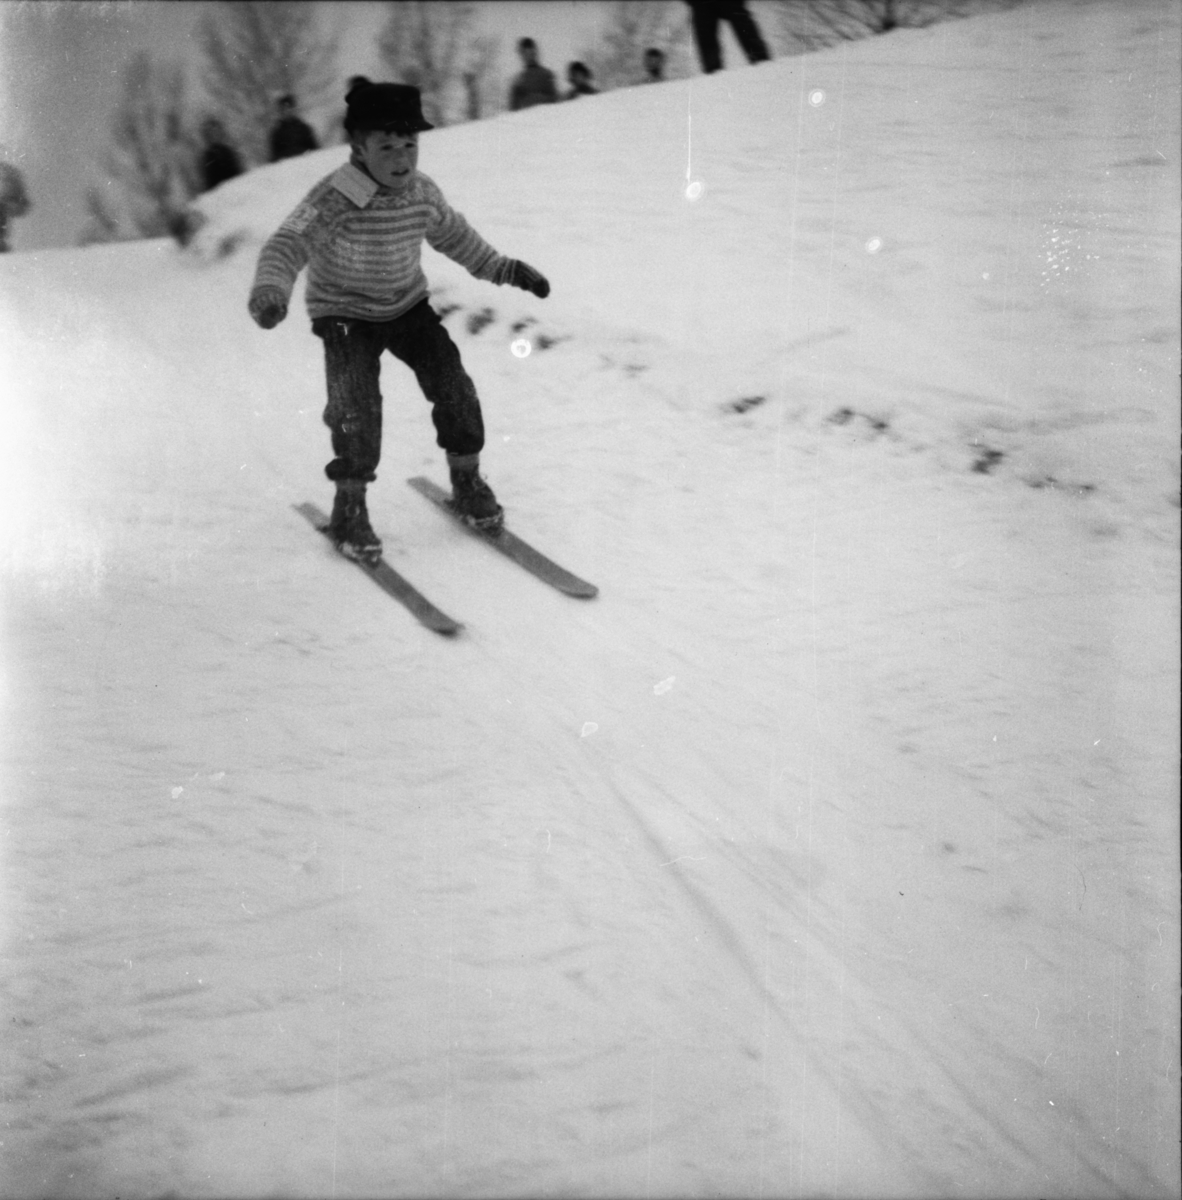 Vardens arkiv. "Skiskolen begynner"  08.02.1954